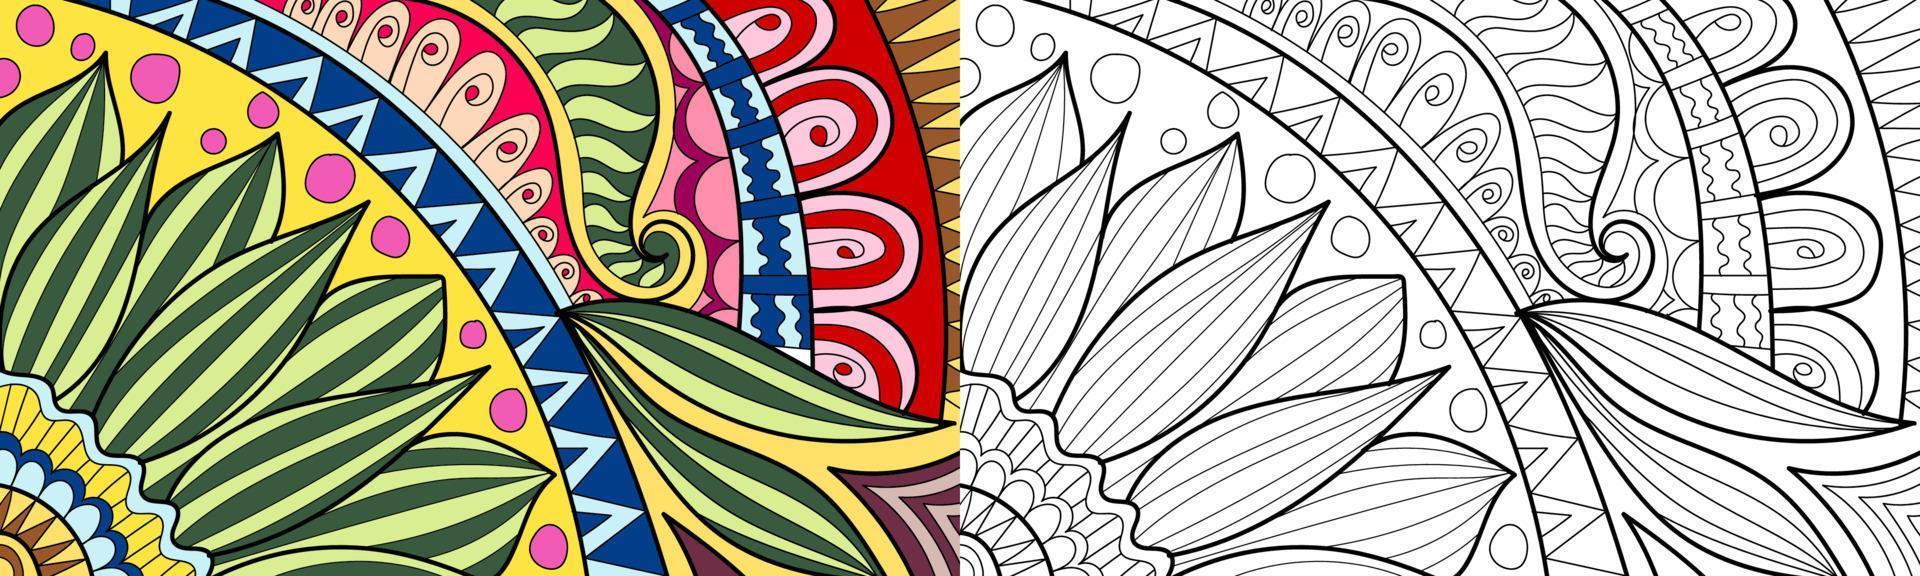 illustrazione decorativa del libro da colorare di progettazione di stile di mehndi del hennè vettore